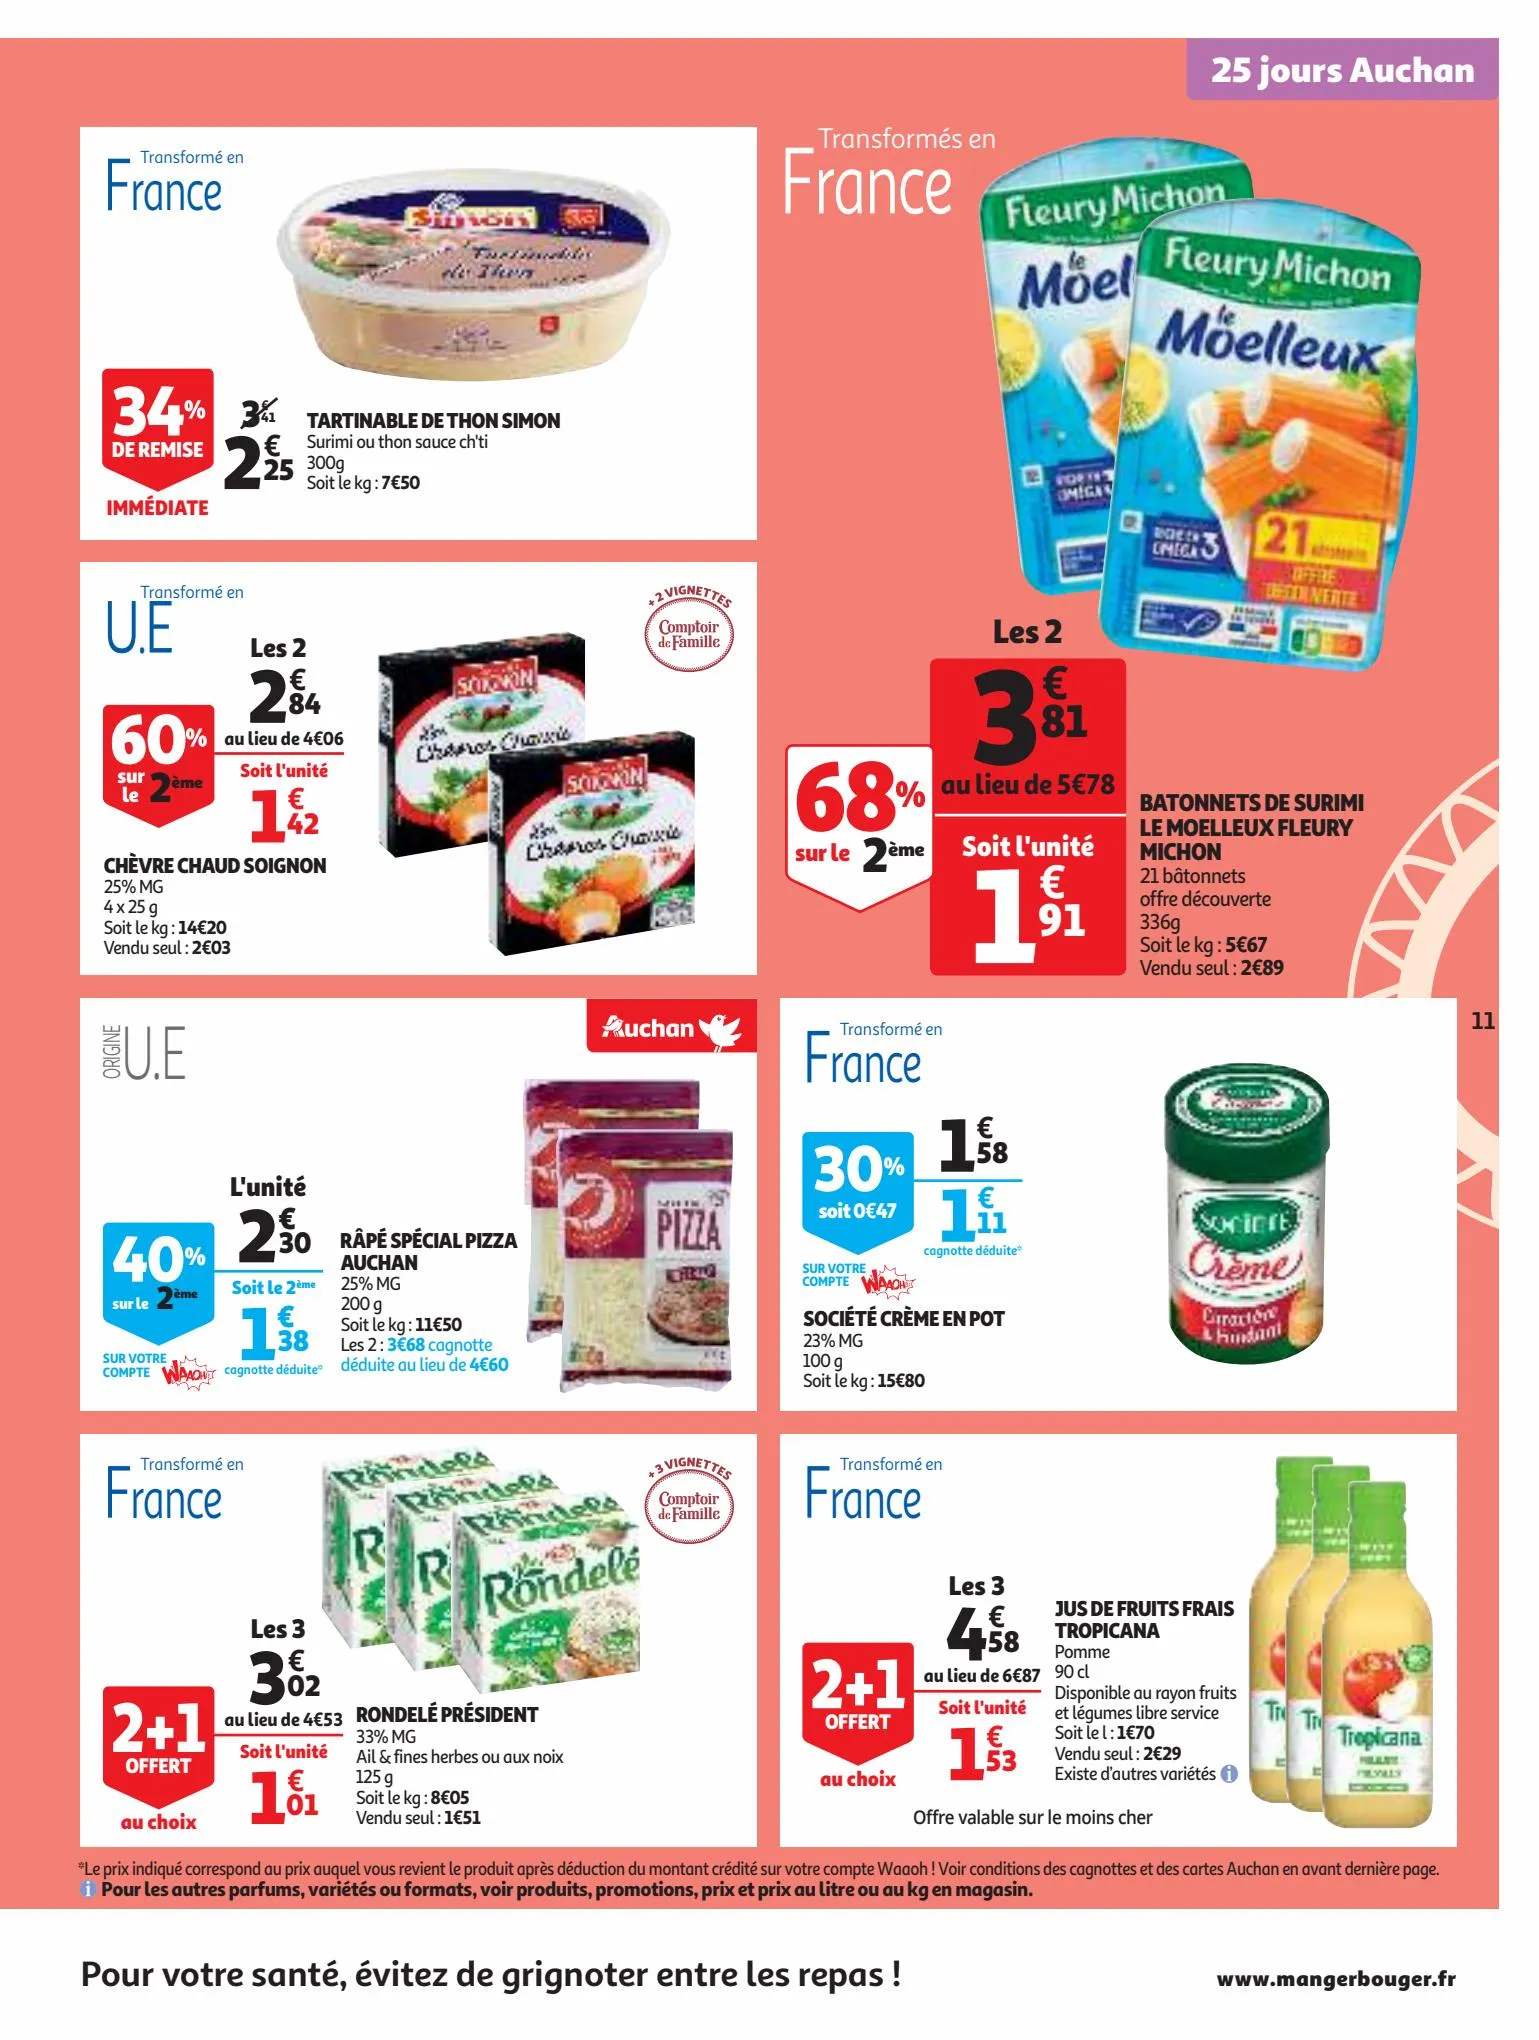 Catalogue 25 Jours Auchan, page 00011